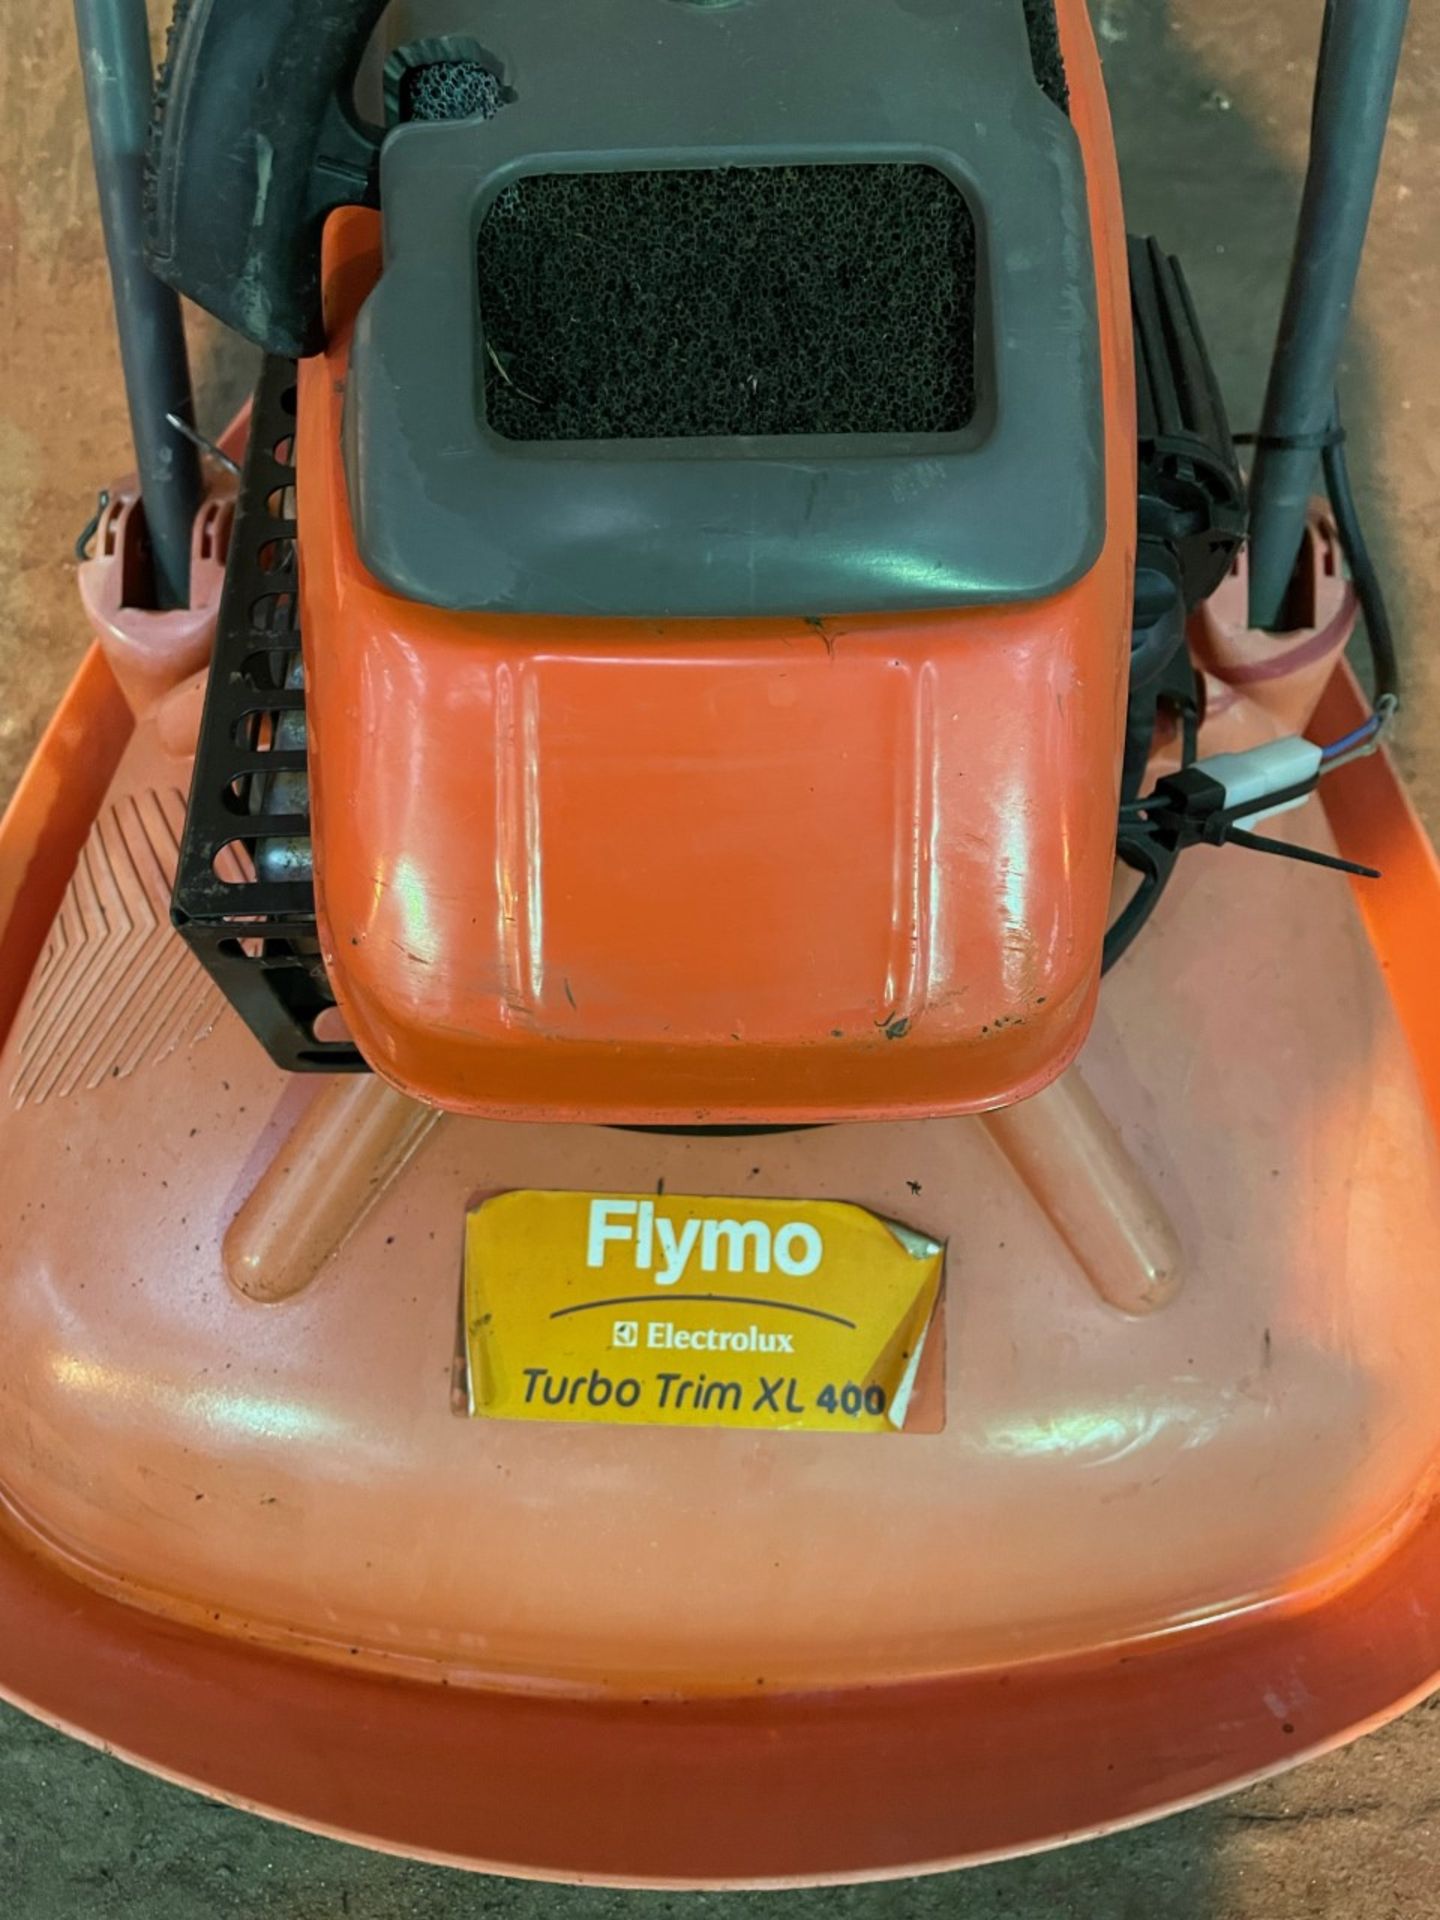 Flynn turbo trim XL400 petrol powered mower - Image 2 of 2